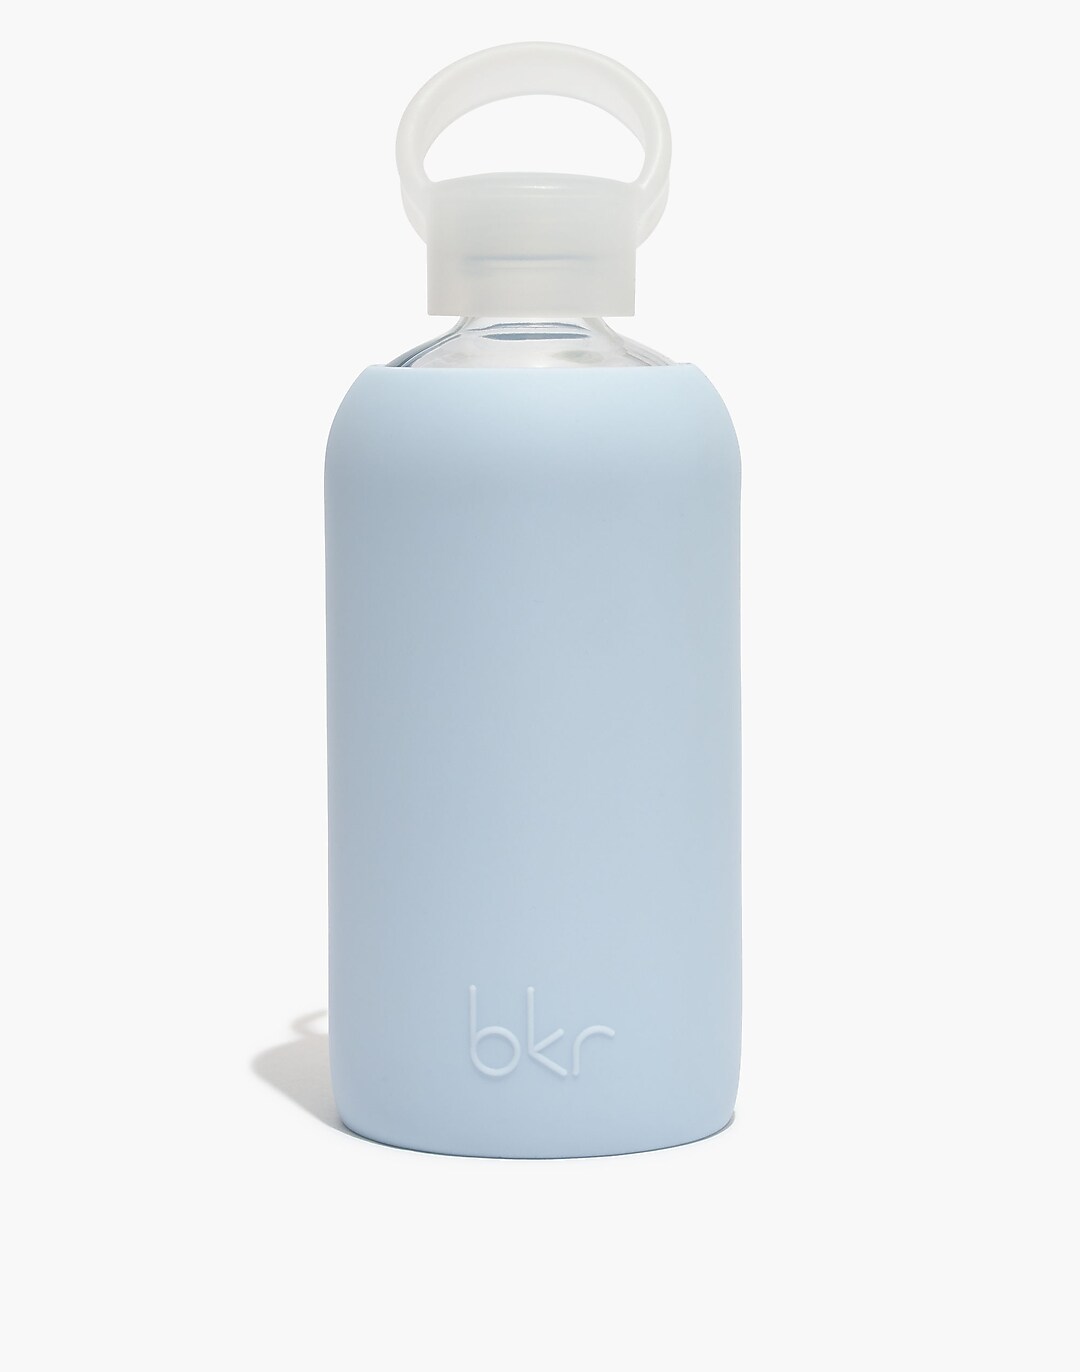 Bkr Water Bottle in Grace Blue, Golden Rule Gallery